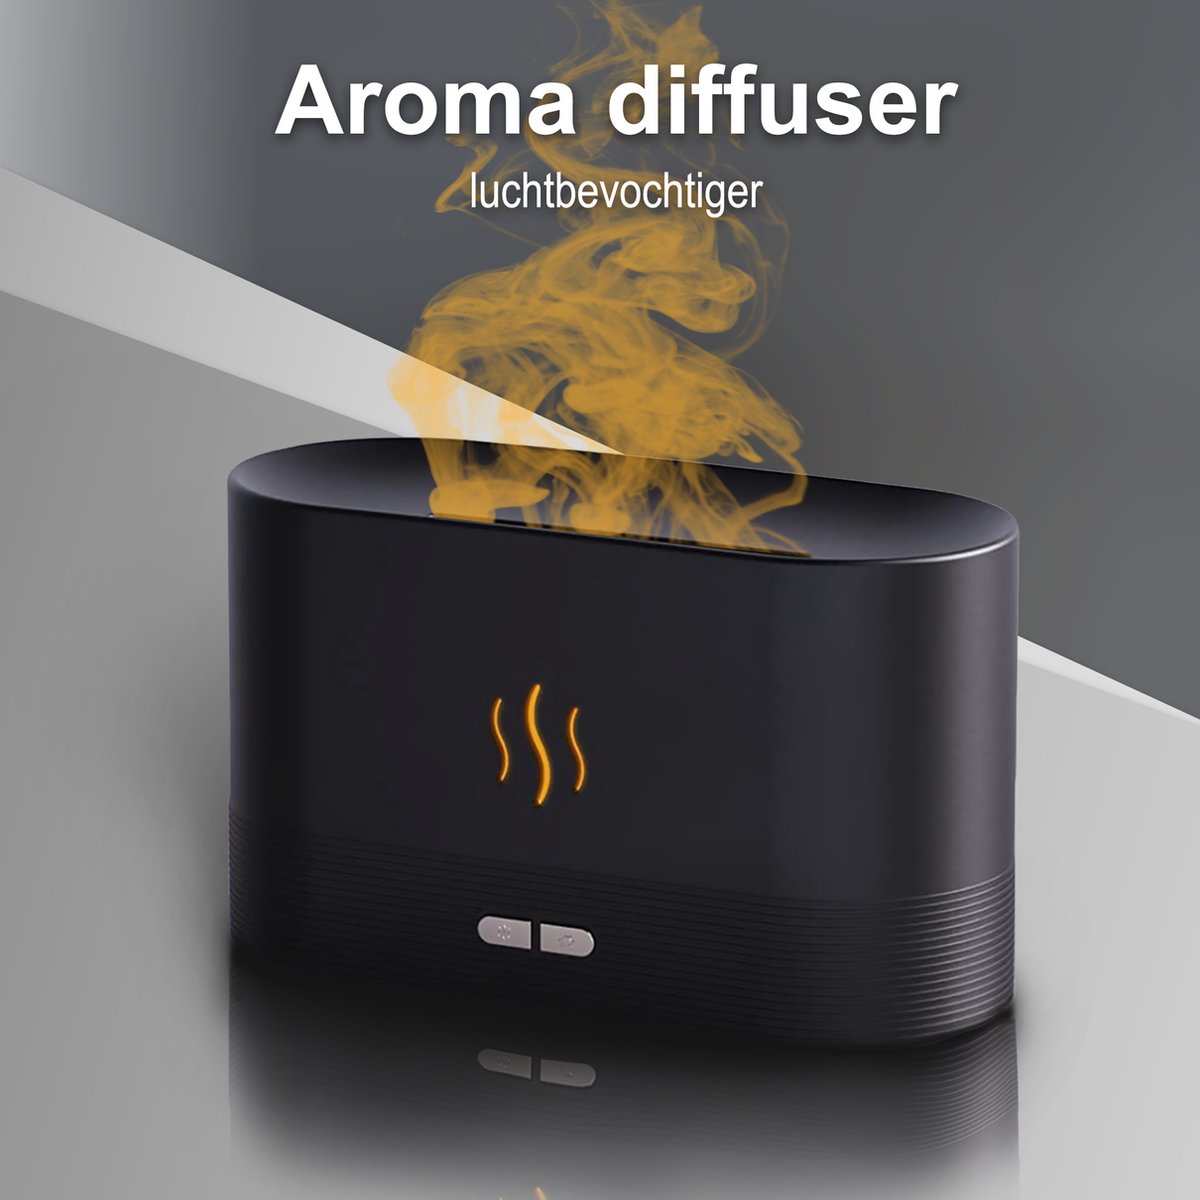 ®AJM - Aroma diffuser - Luchtbevochtiger - Vernevelaar - Aromatherapie - Geurverspreider - Vlam effect in 7 verschillende kleuren - Zwart